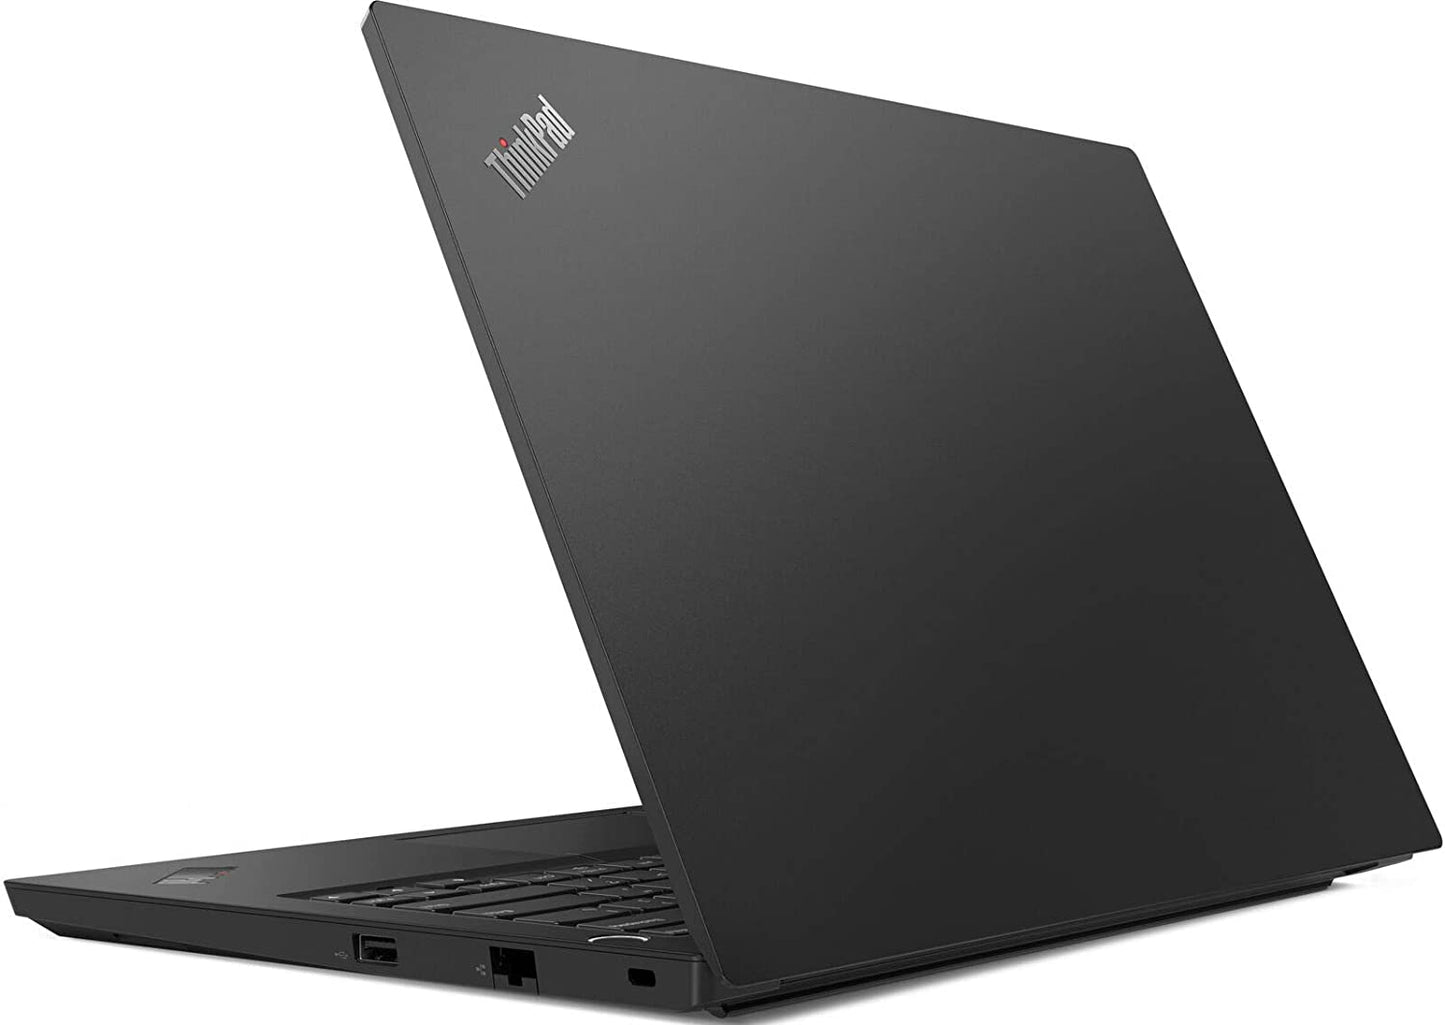 LENOVO ThinkPad E14 Core i7 8gb Laptop | Laptops in Dar Tanzania